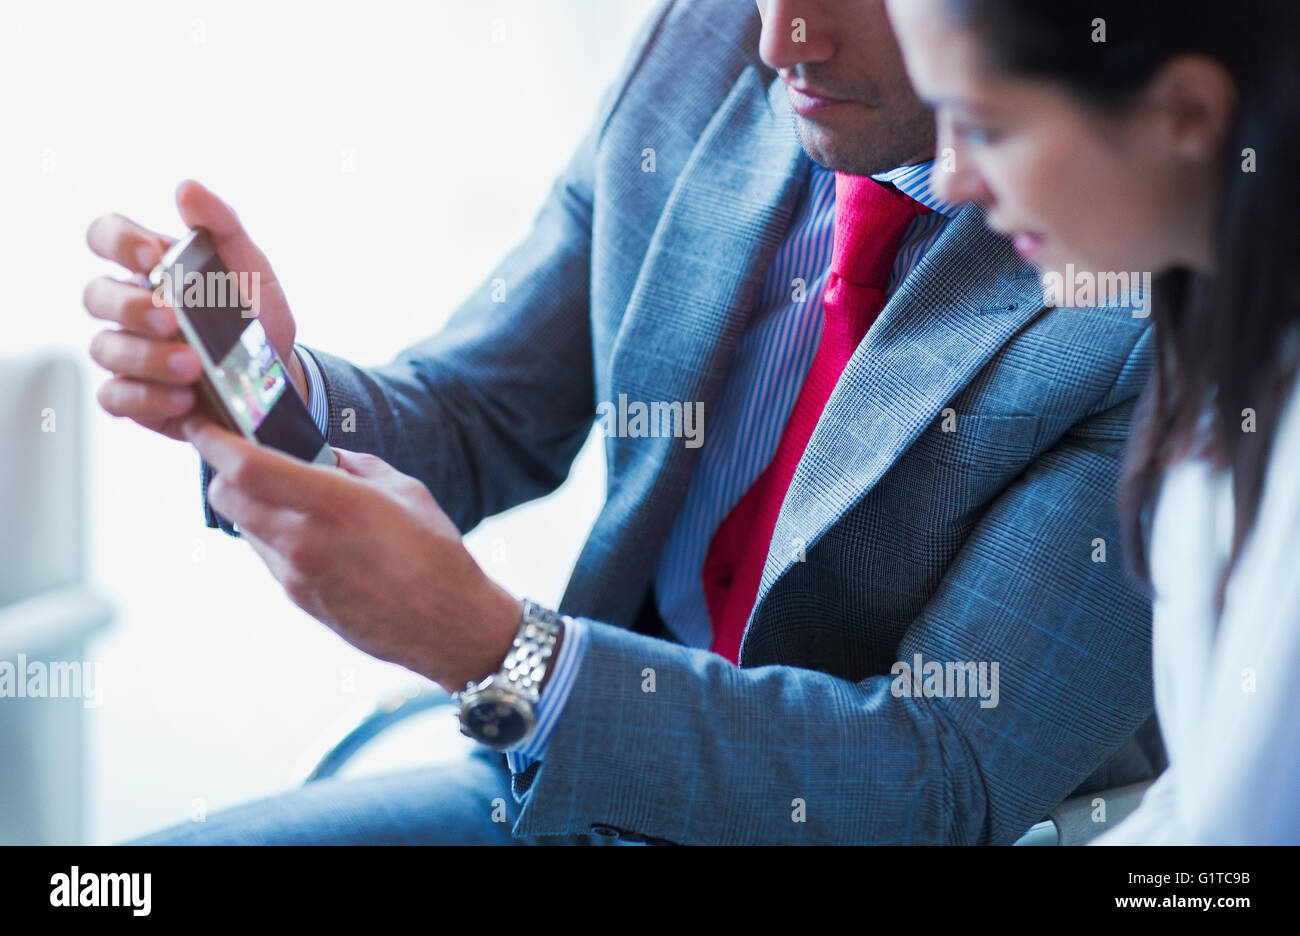 Businessman showing cell phone vidéo pour businesswoman Banque D'Images